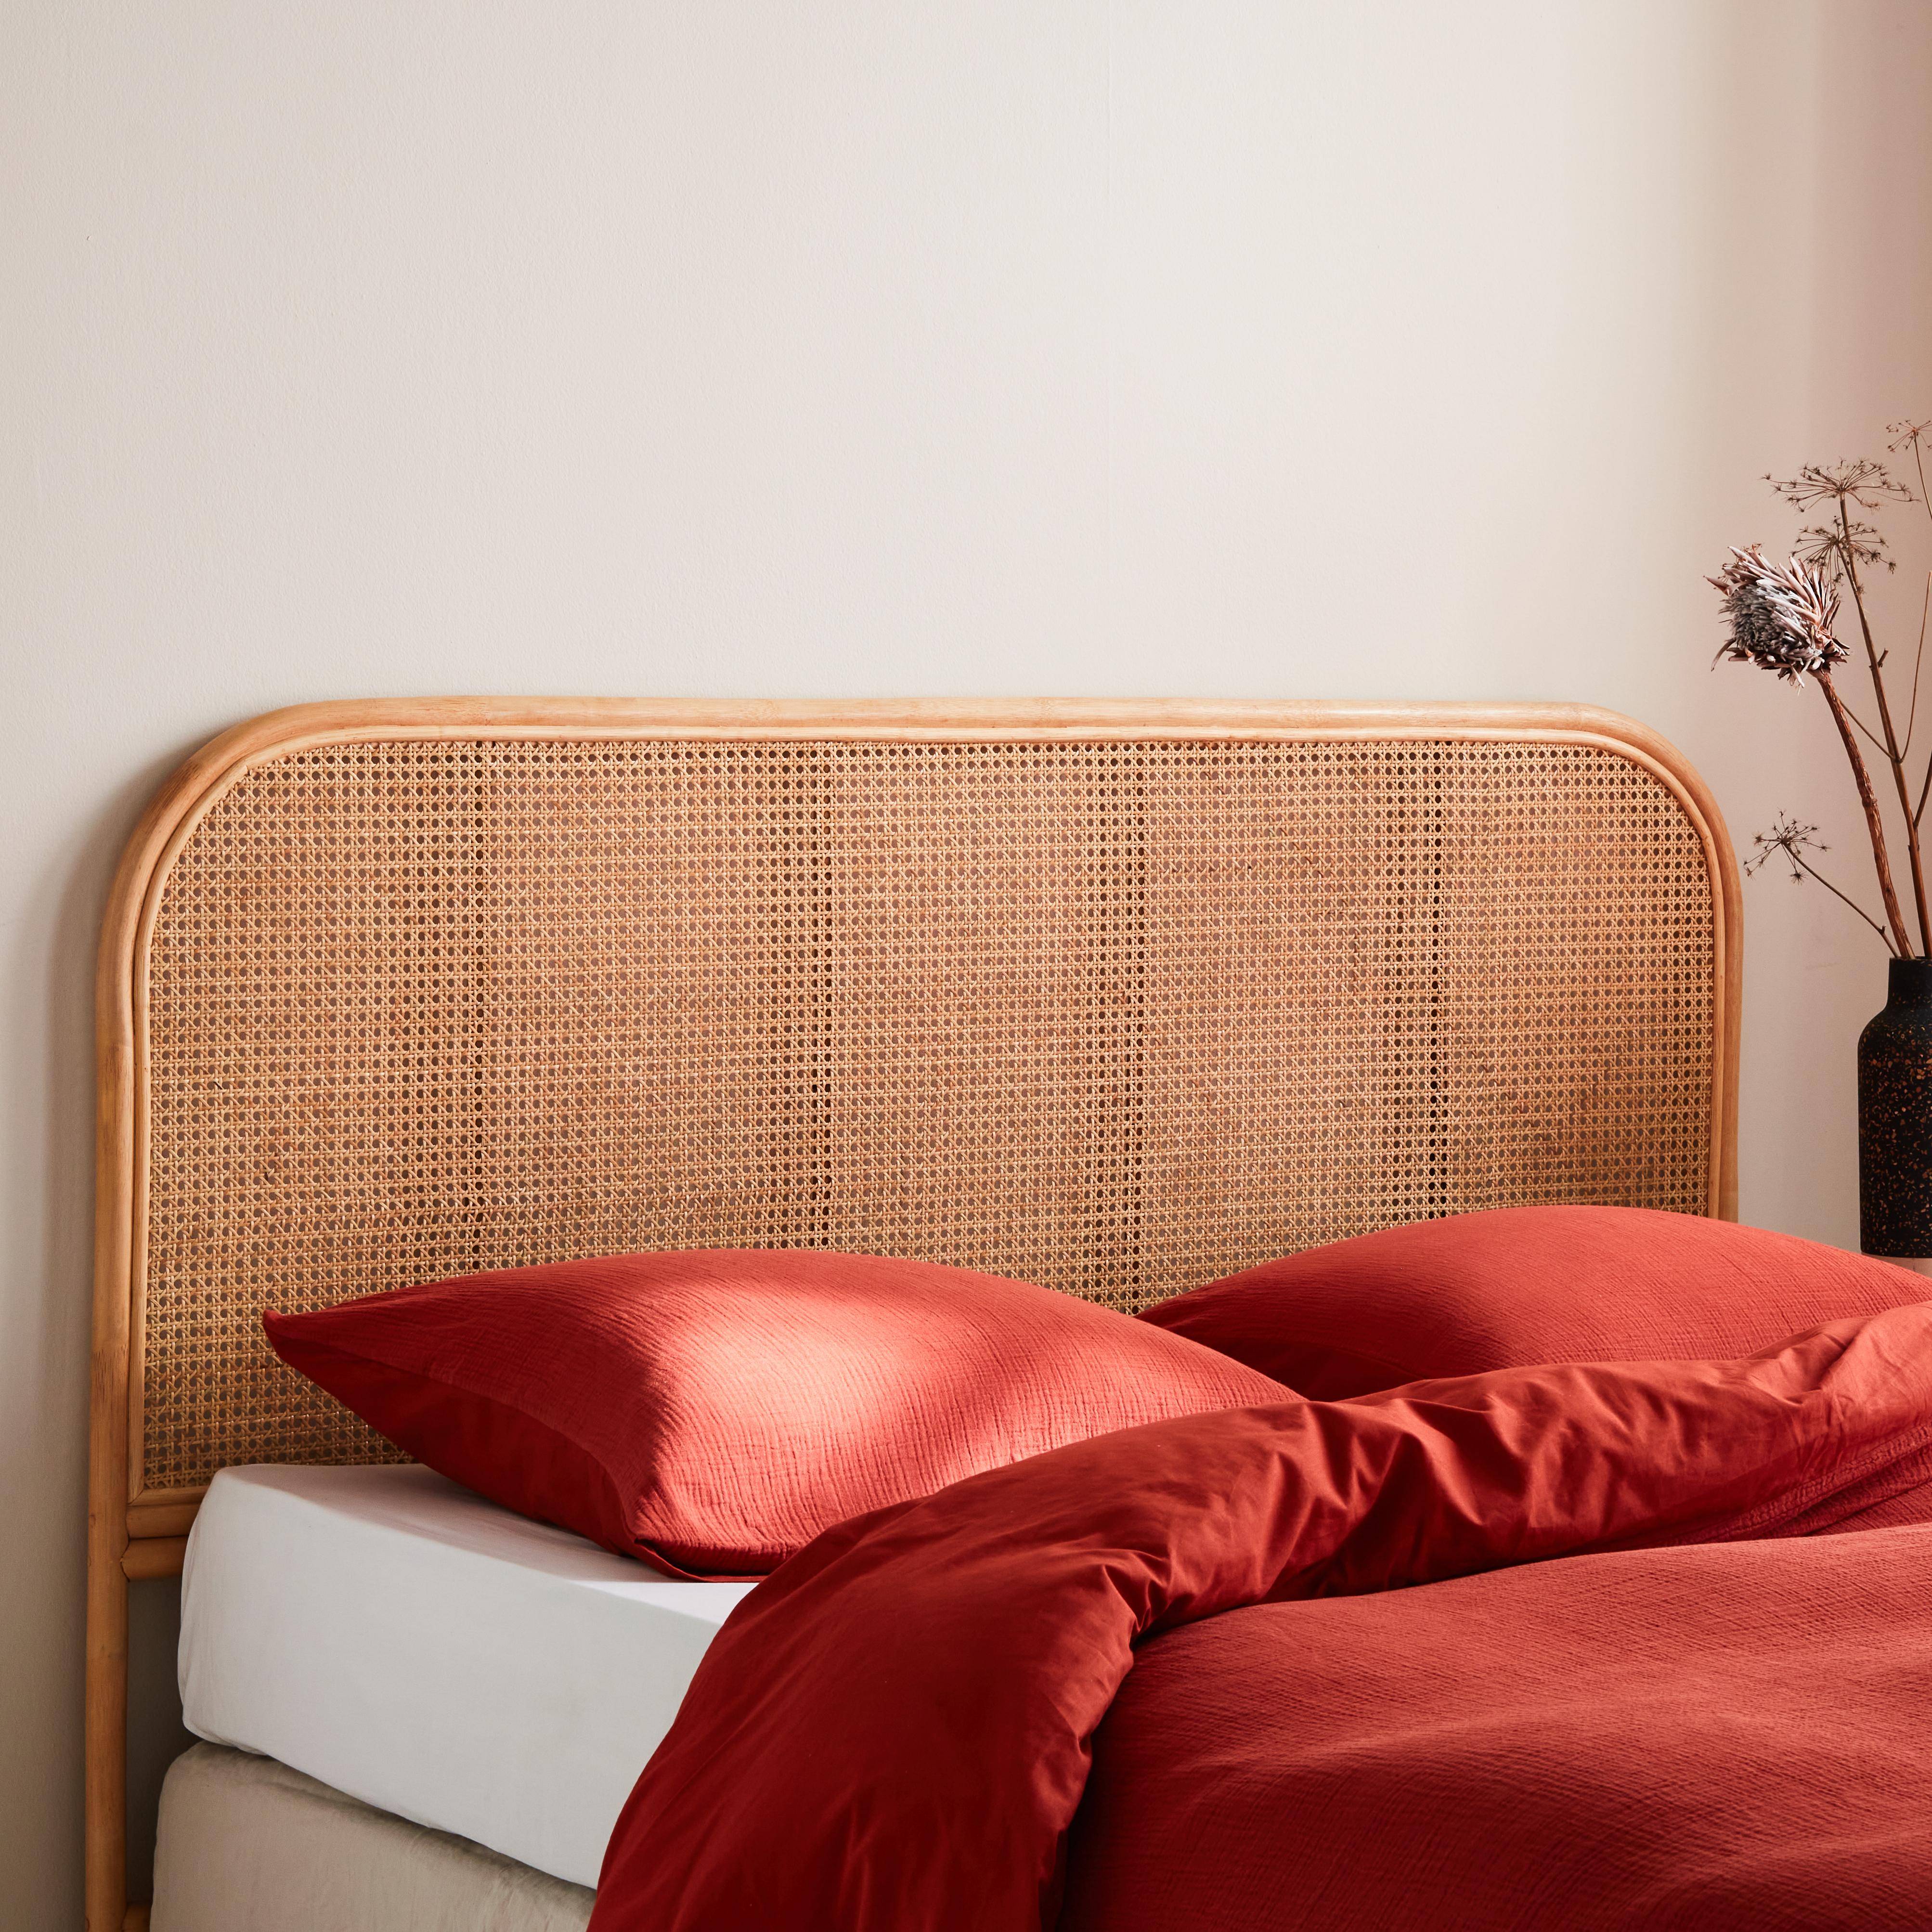 Kopfteil aus Rattan und Rohrgeflecht Natur passend für Betten mit einer Breite von 160 cm Photo1